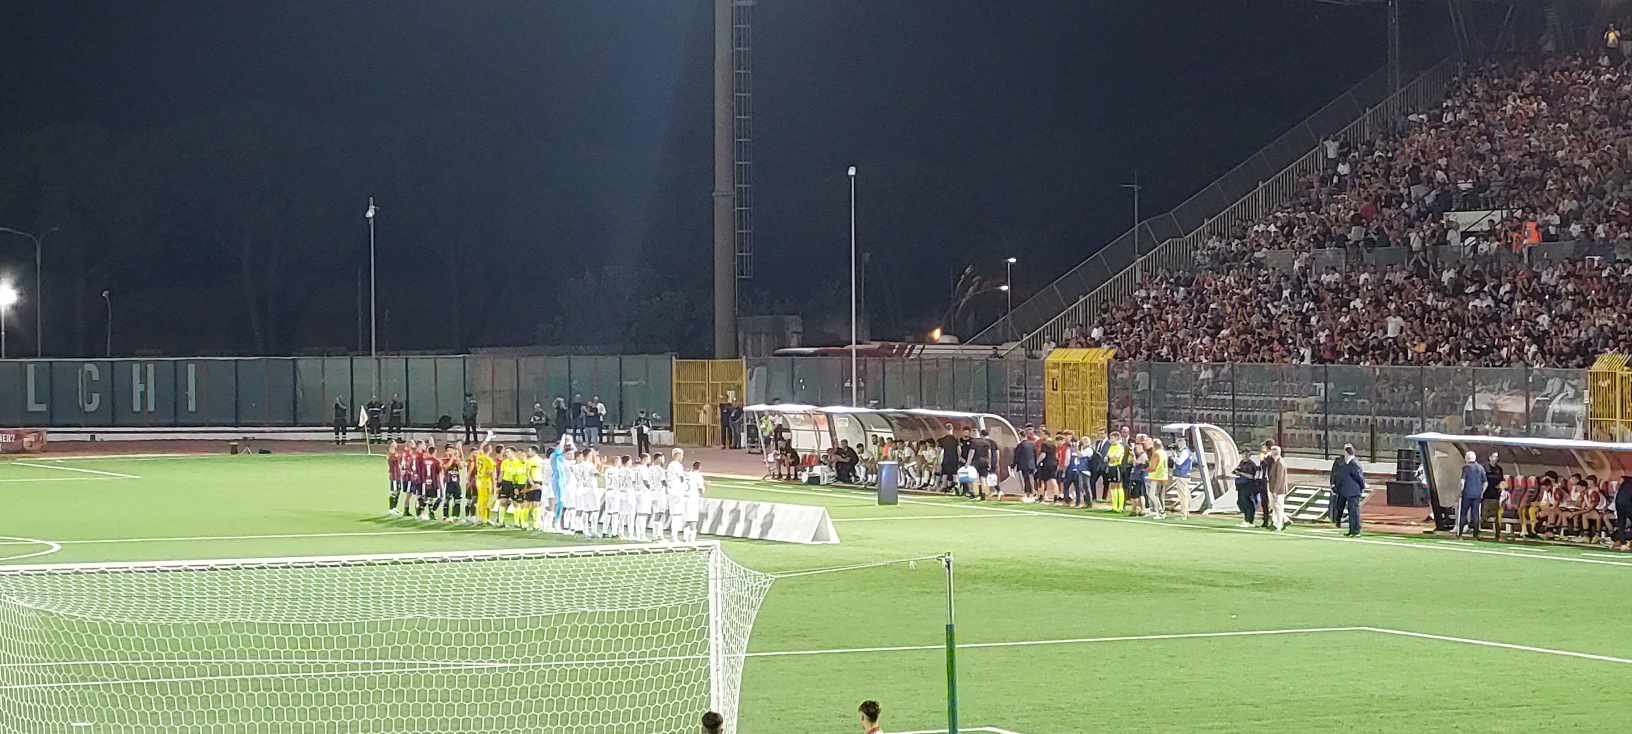 Casertana-Benevento: 0-0. A reti inviolate il derby del “Pinto”